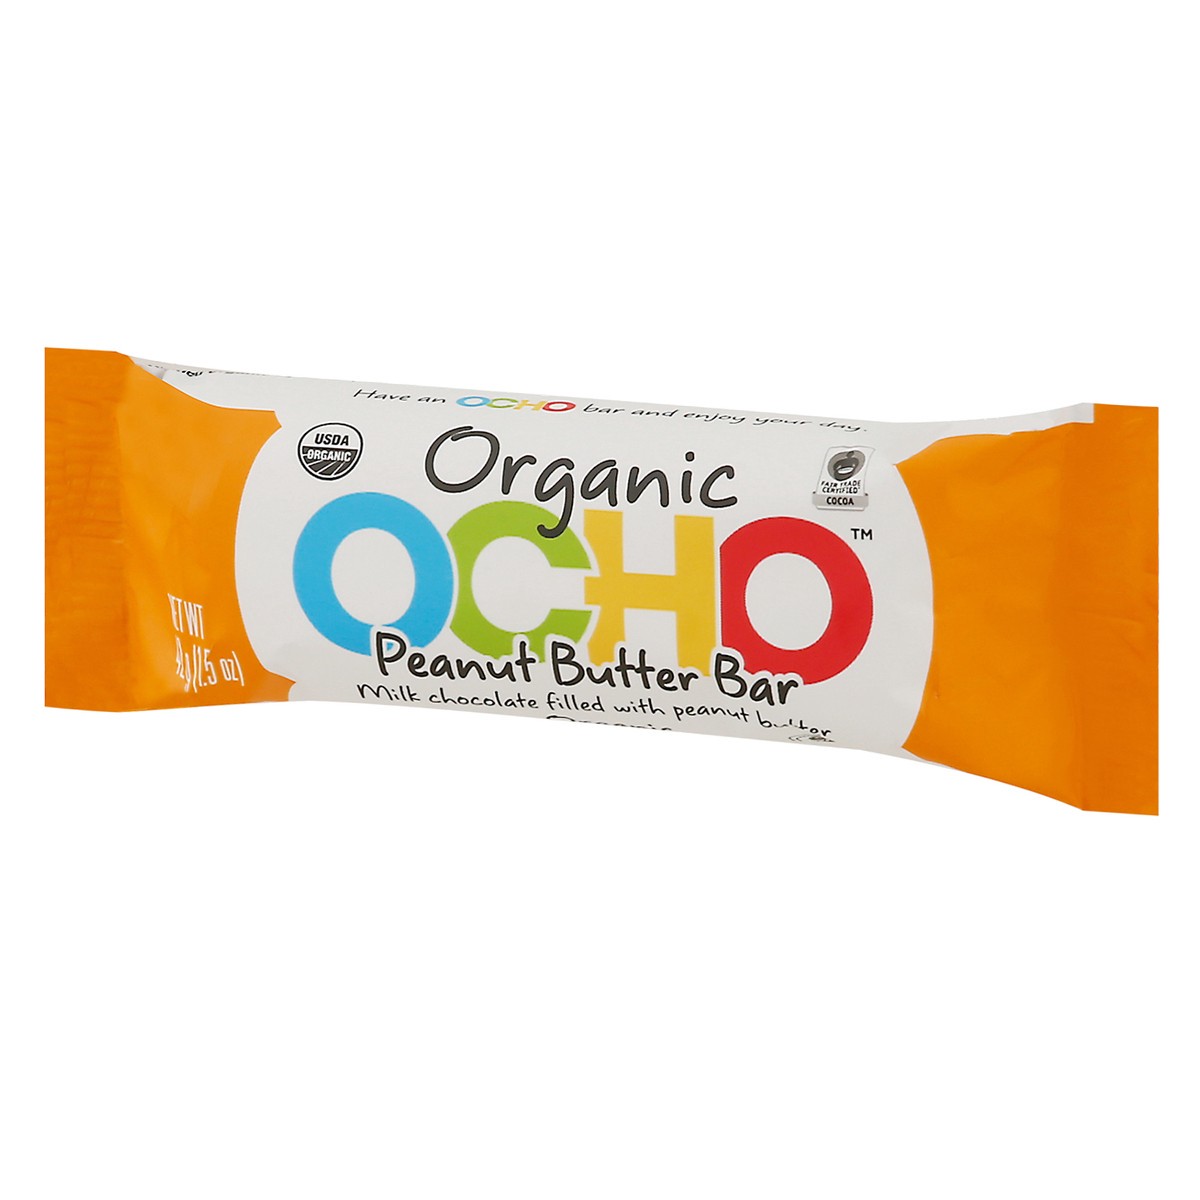 slide 7 of 13, OCHO Organic Peanut Butter Bar 1.5 oz, 1.5 oz